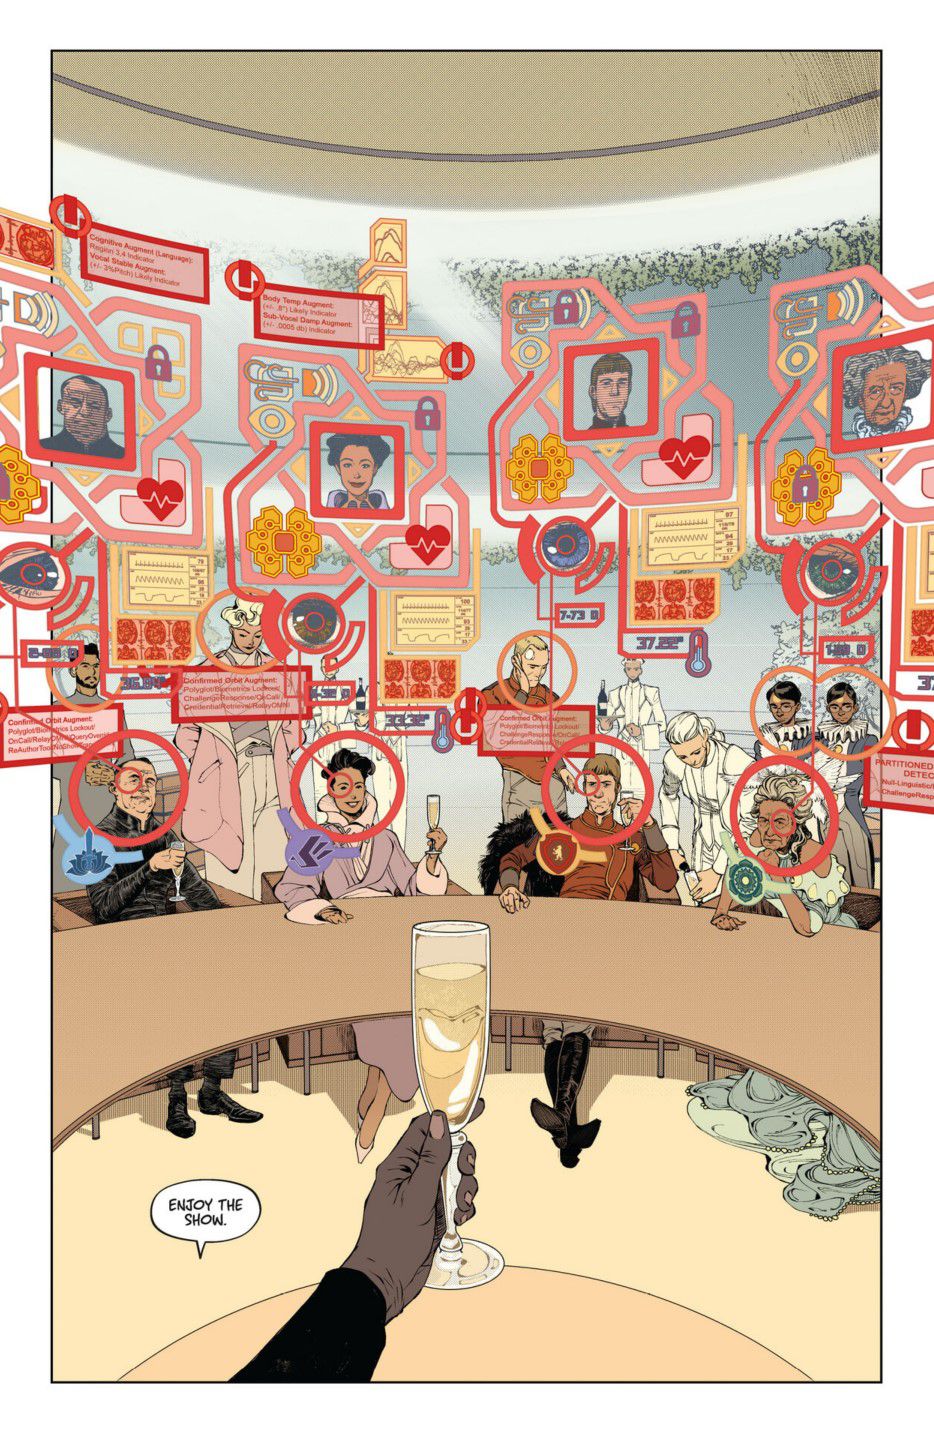 En helsidesillustration från Dawnrunner #1, med en synvinkelbild av en man som håller ett champagneglas mot ett bord med gäster som identifierats genom en heads-up-display med augmented reality.